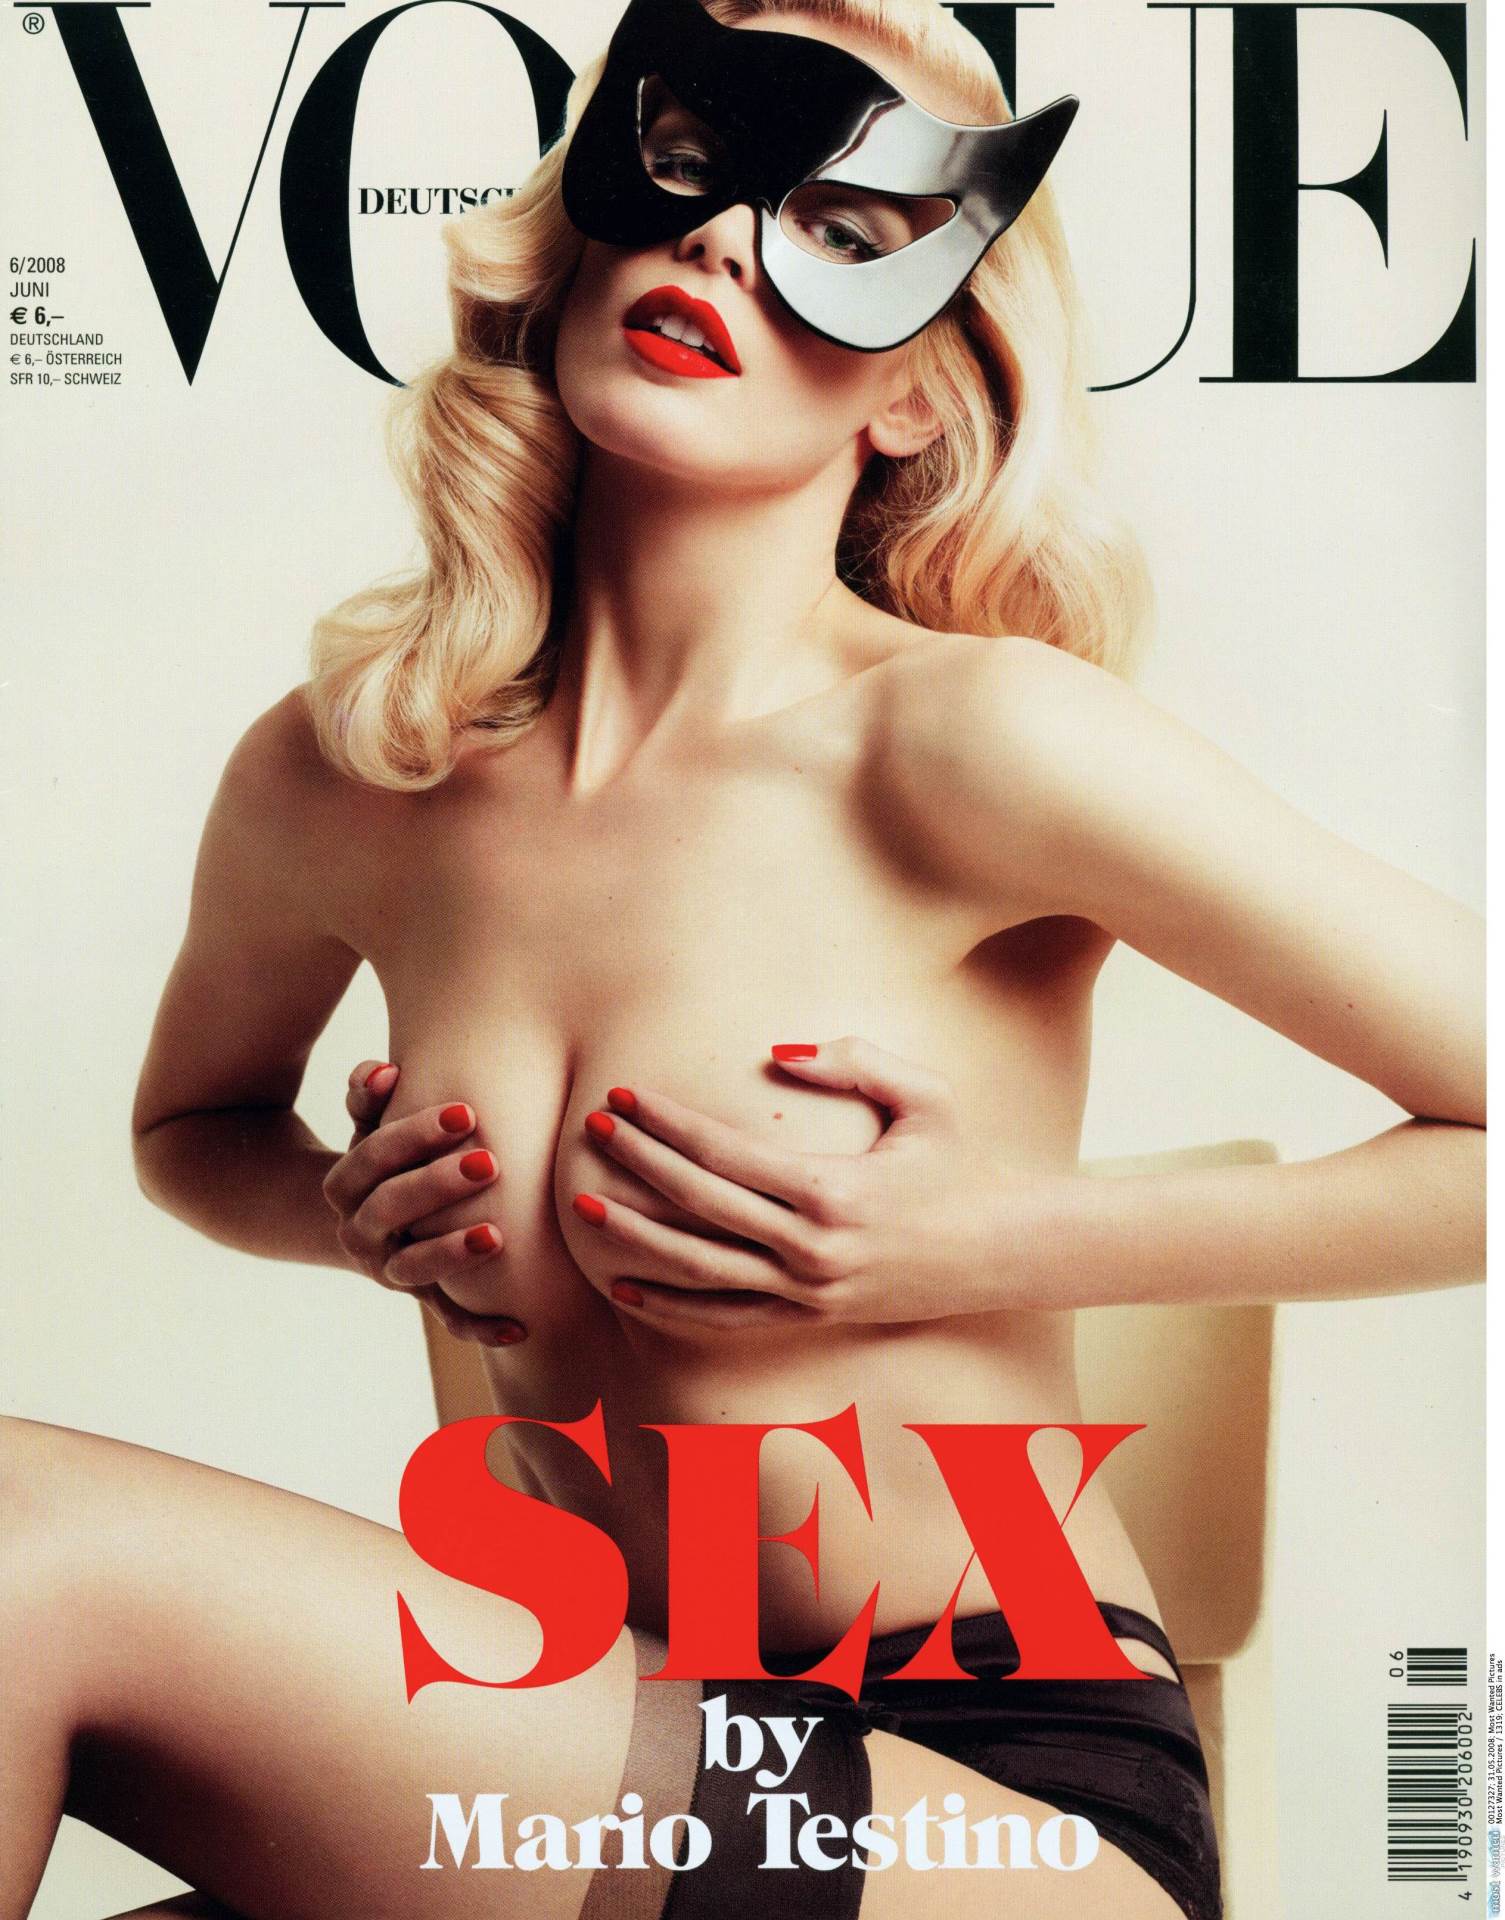 Claudia Schiffer, Vogue